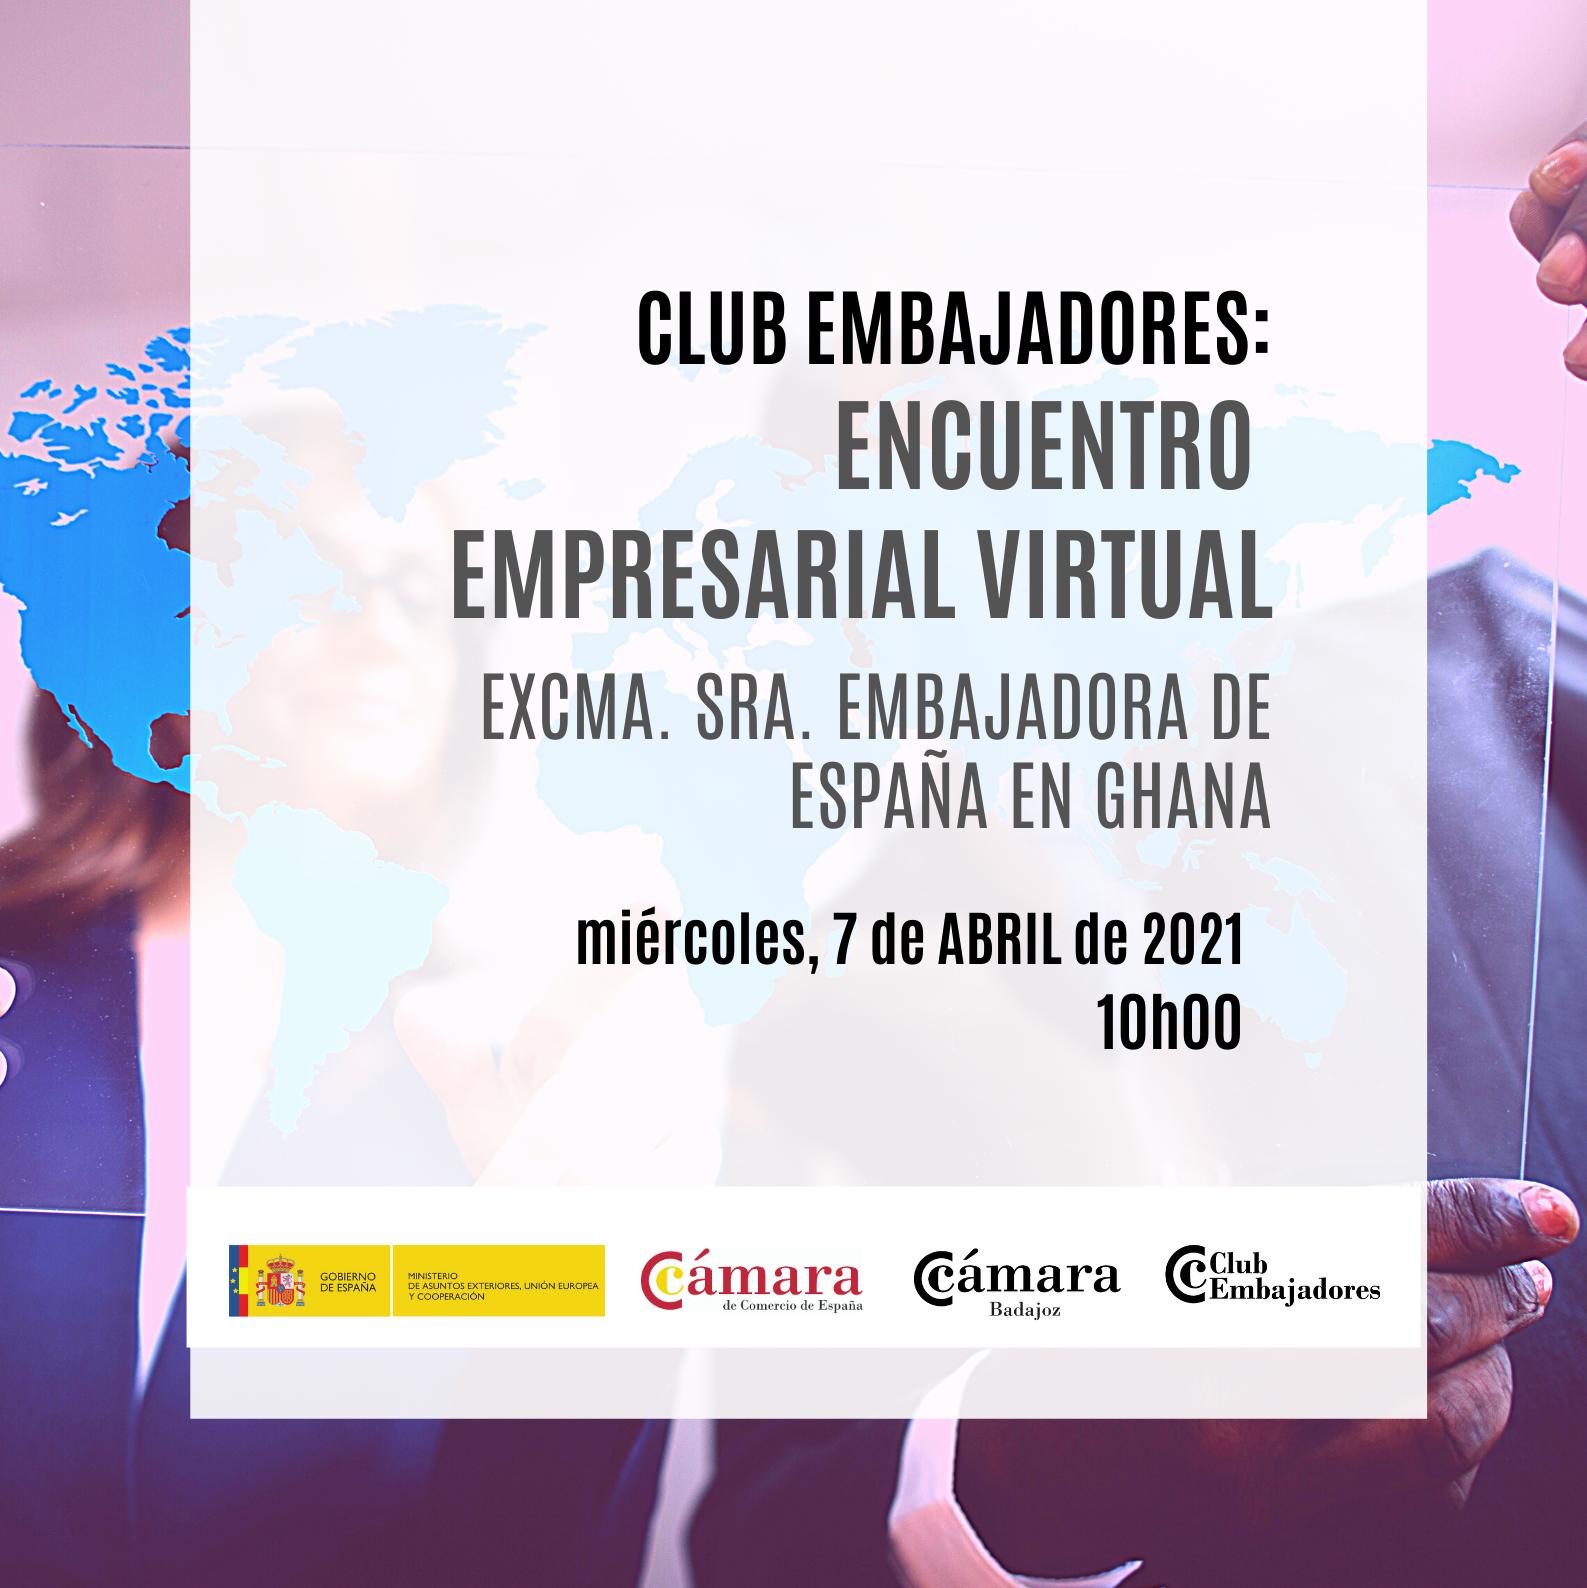 CLUB EMBAJADORES: Encuentro con la Excma. Sra. Embajadora de España en Ghana